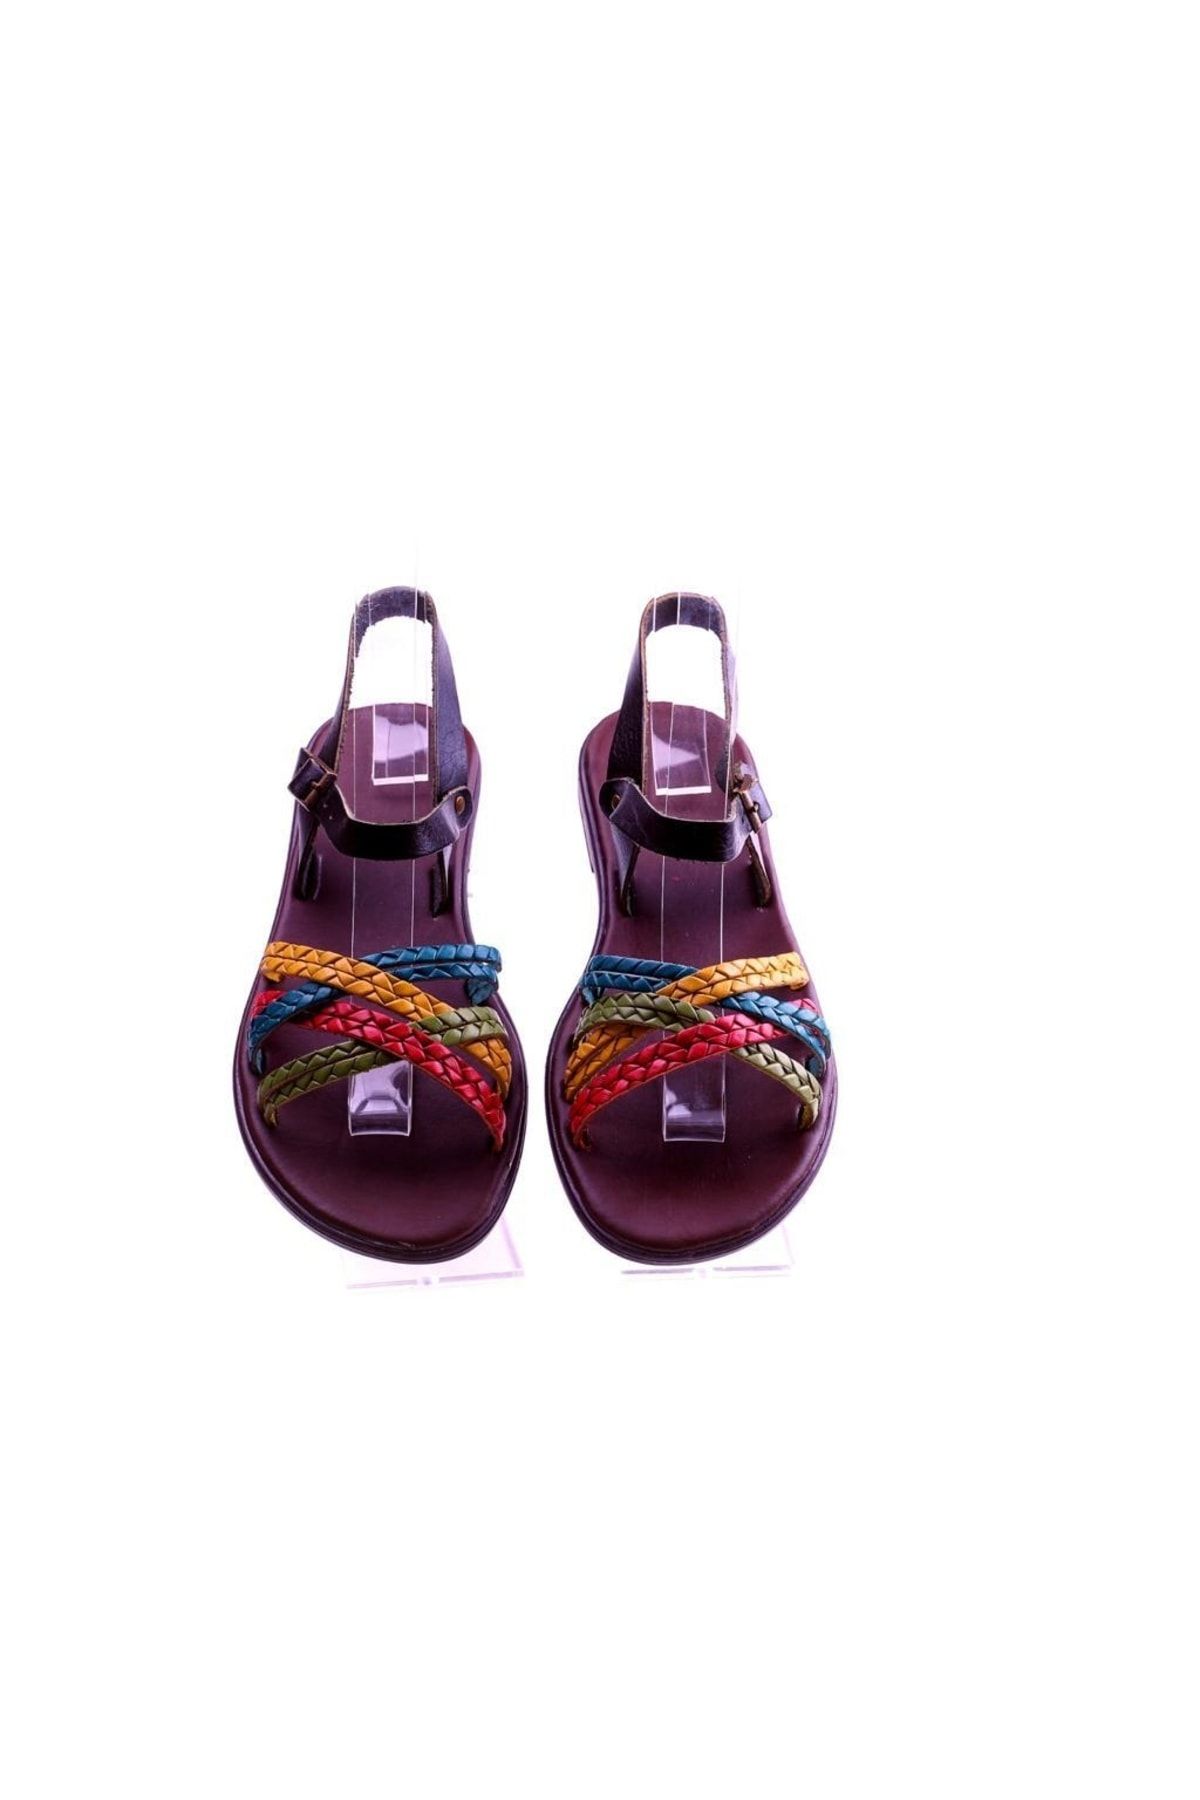 TREND Örgü Baskılı Çok Renkli Hakiki Deri Sandalet